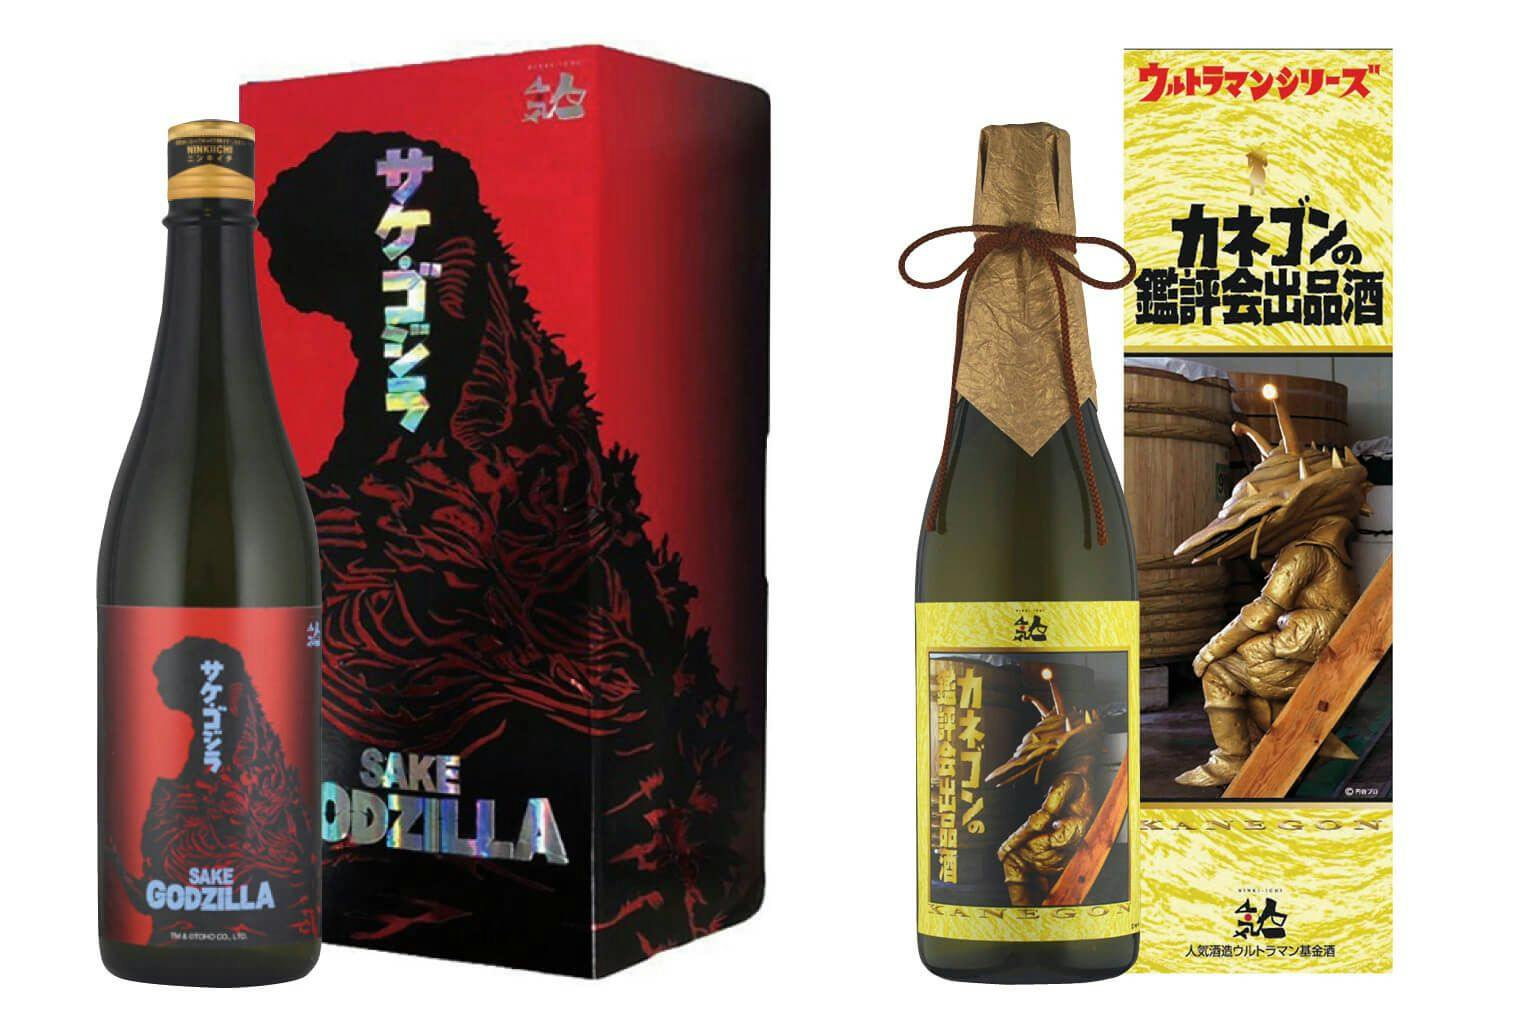 Sake Godzilla and the Ultraman-collaboration sake